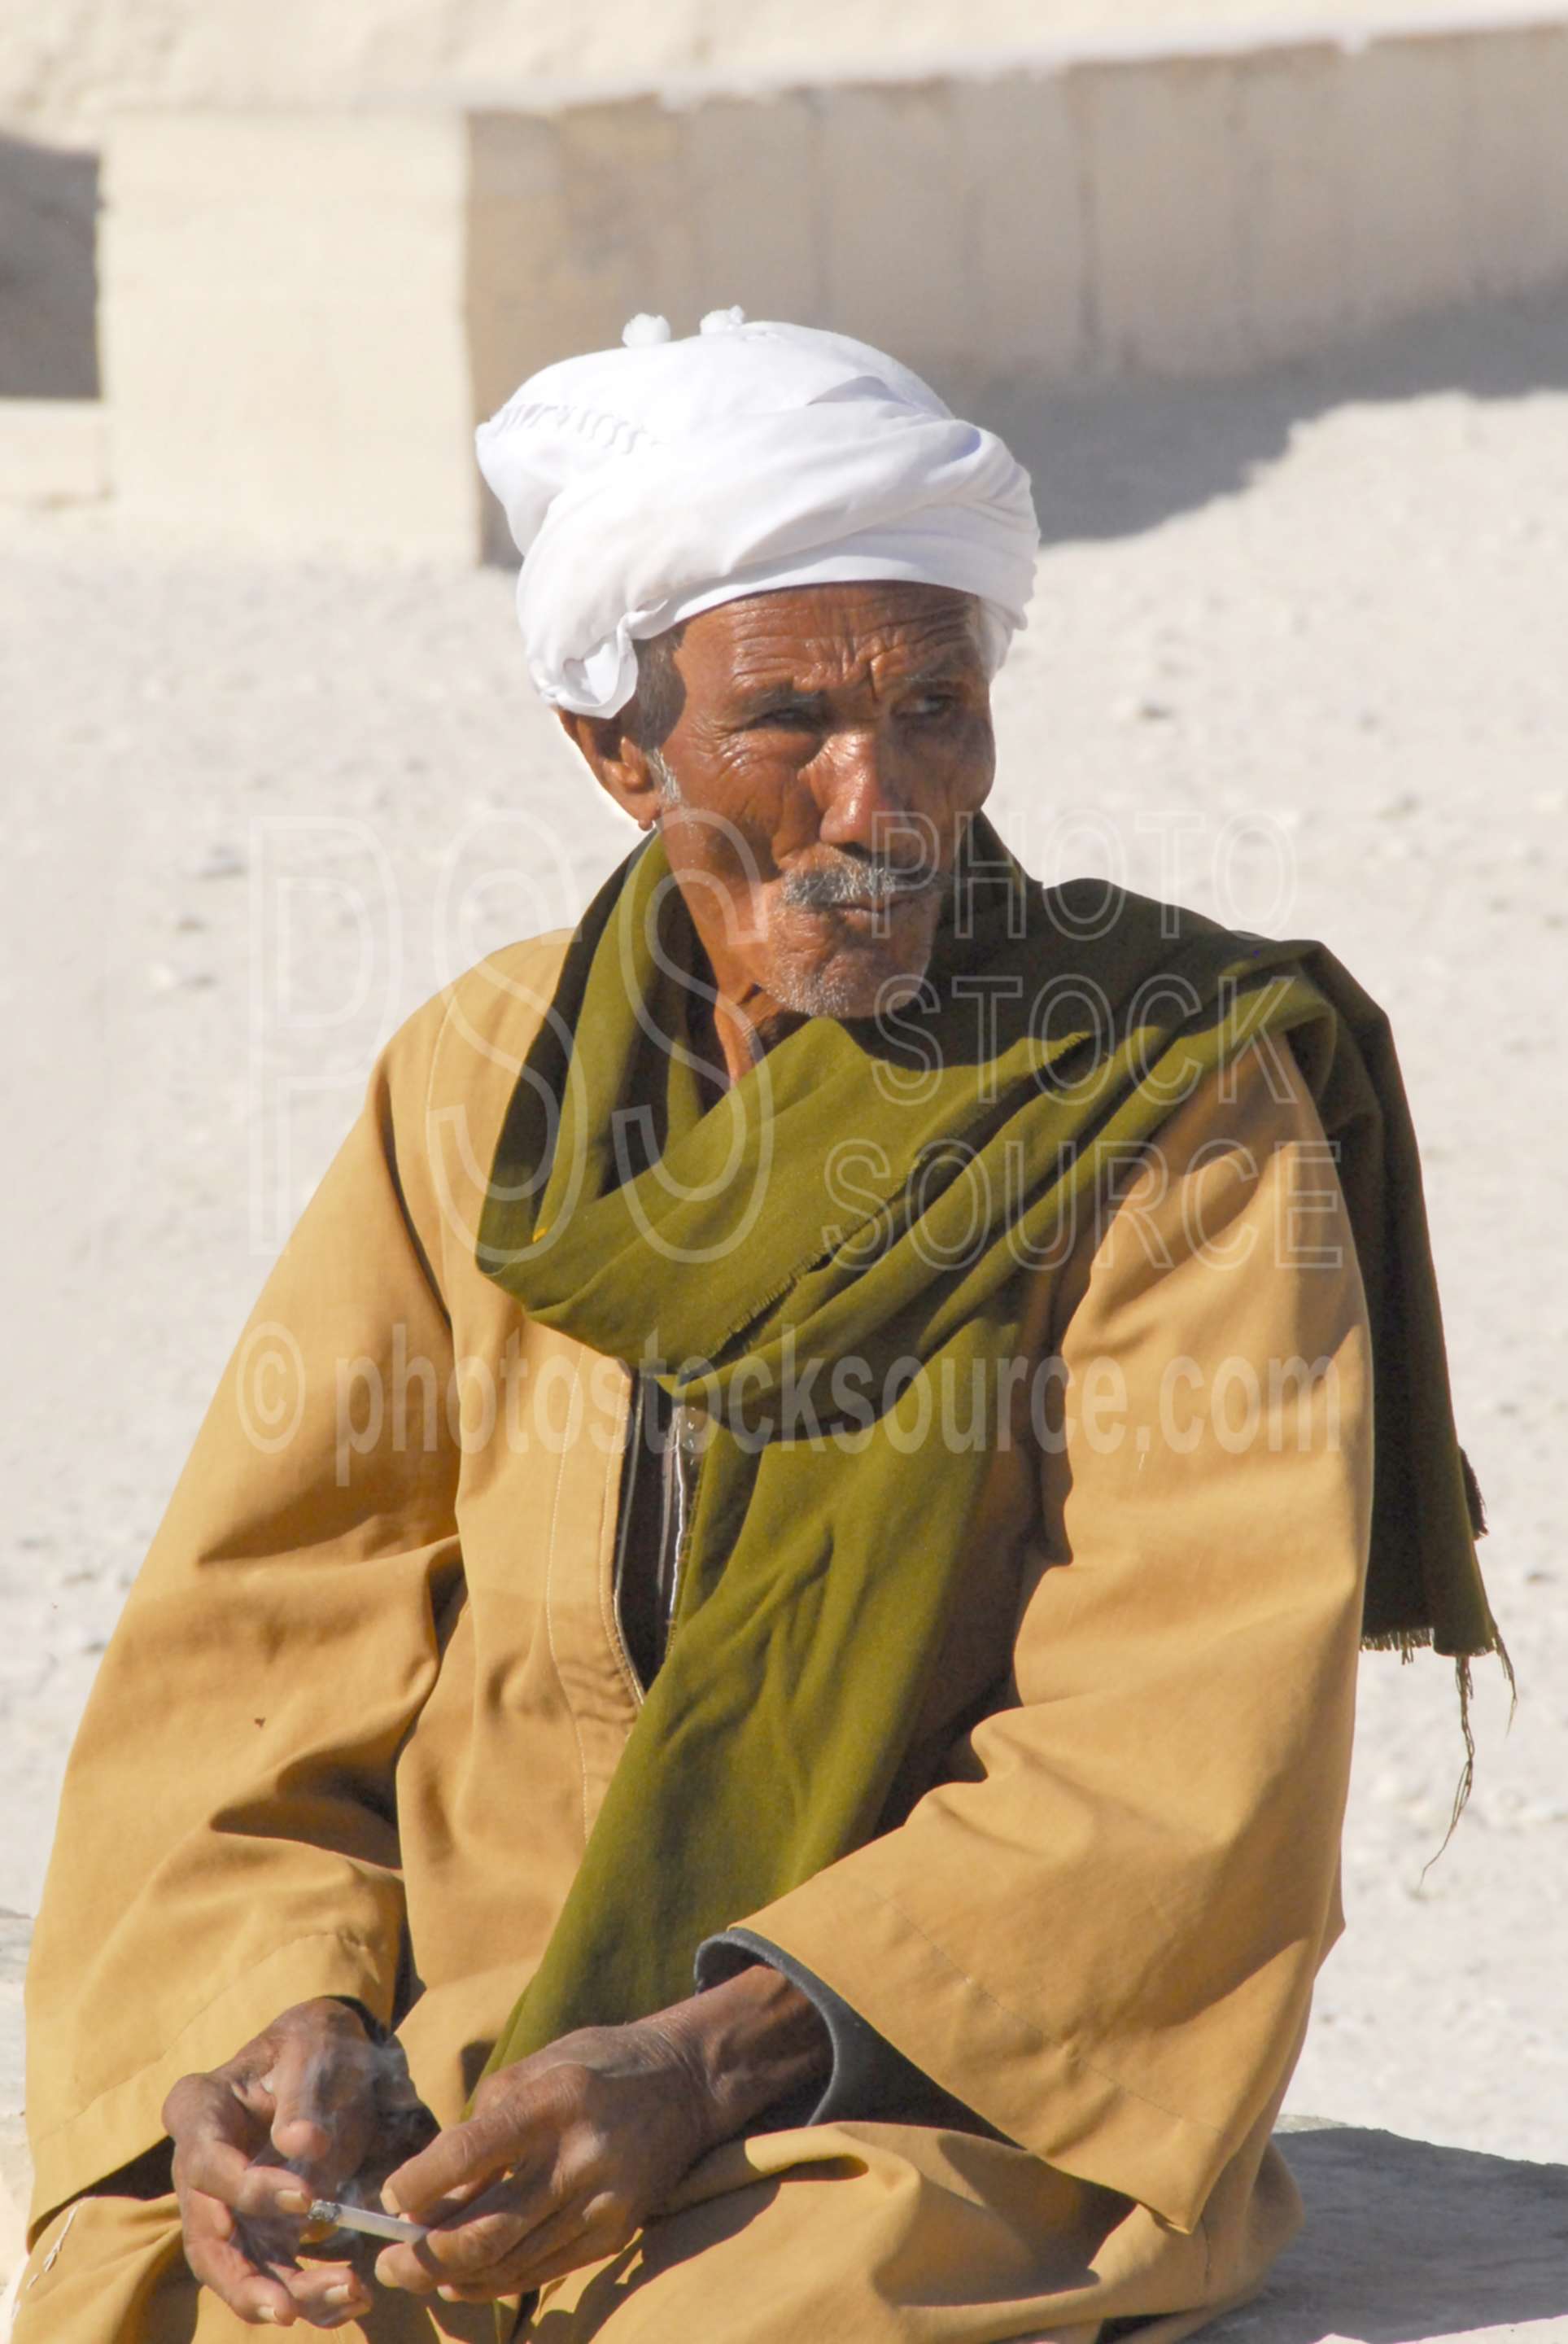 Old Man in Turban,people,turban,musaka,scarf,morning,dawn